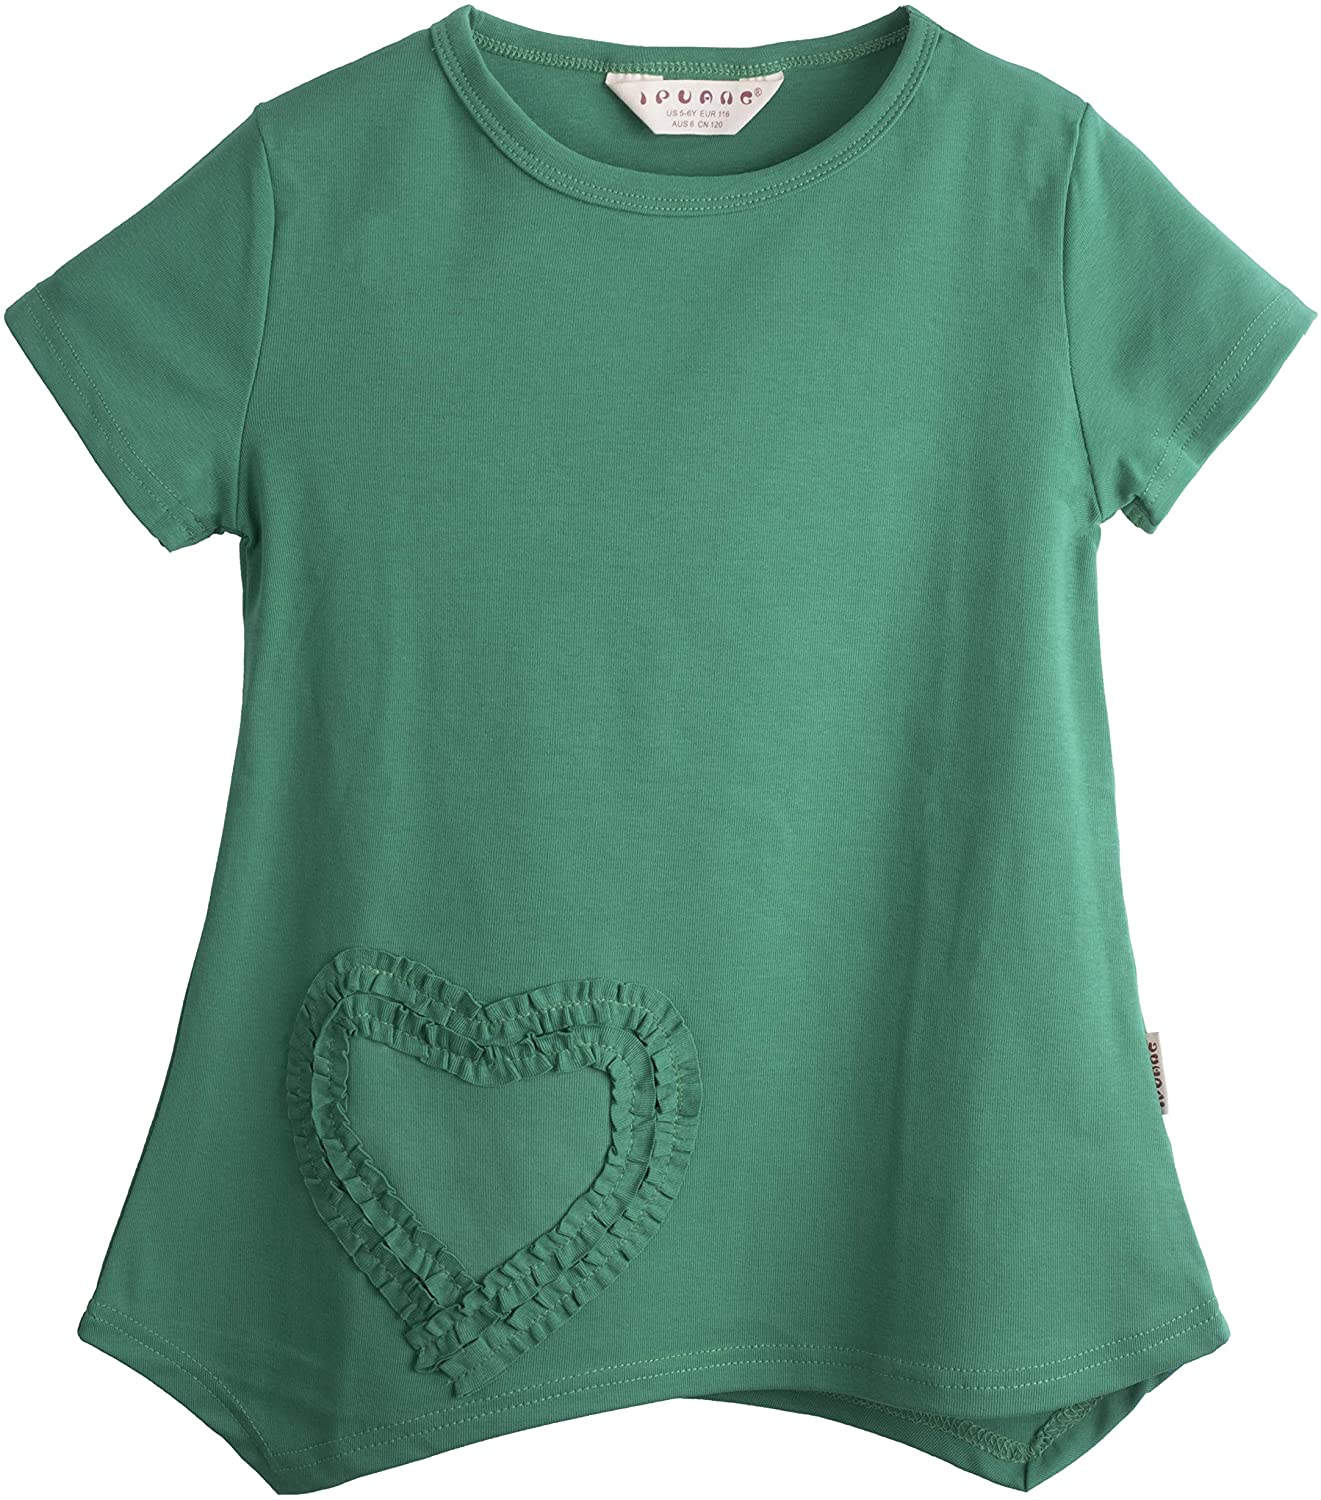 Ipuang Girls Heart-shaped Short Sleeve T-Shirt 